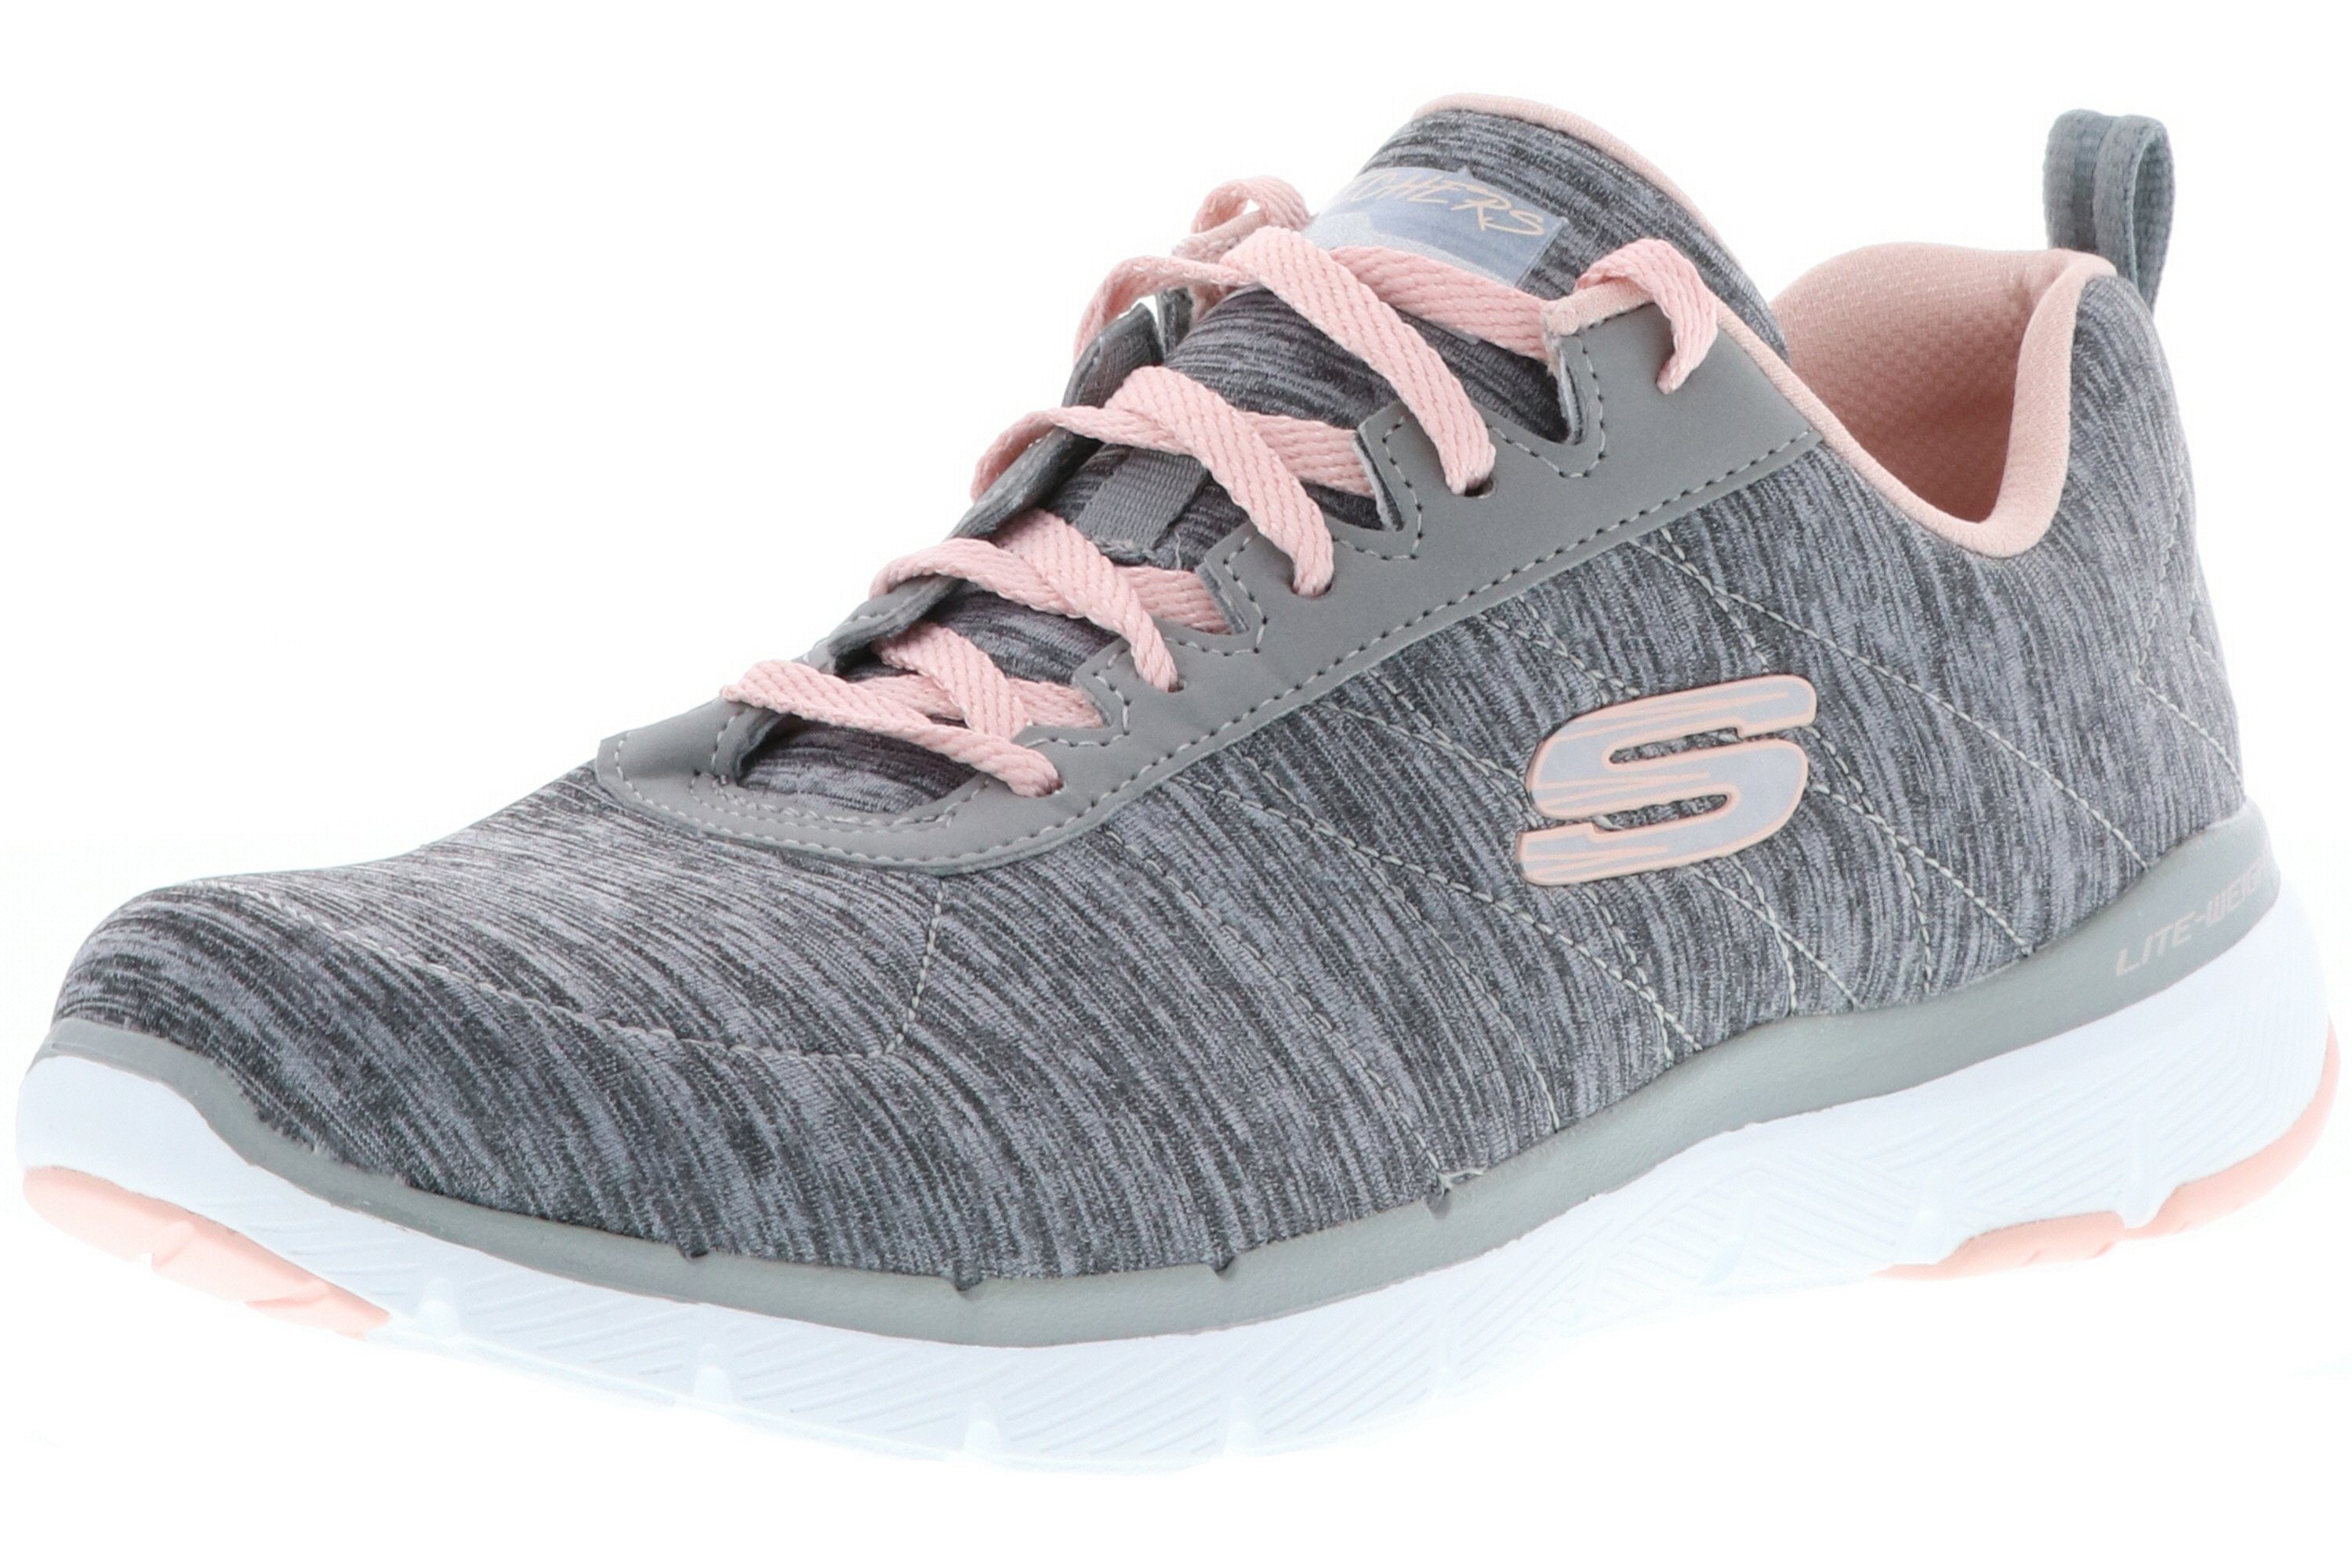 13067/GYLP Sneaker / Flex Skechers Appeal Gray/Light altrosa hellgrau 3.0-Insiders Pink